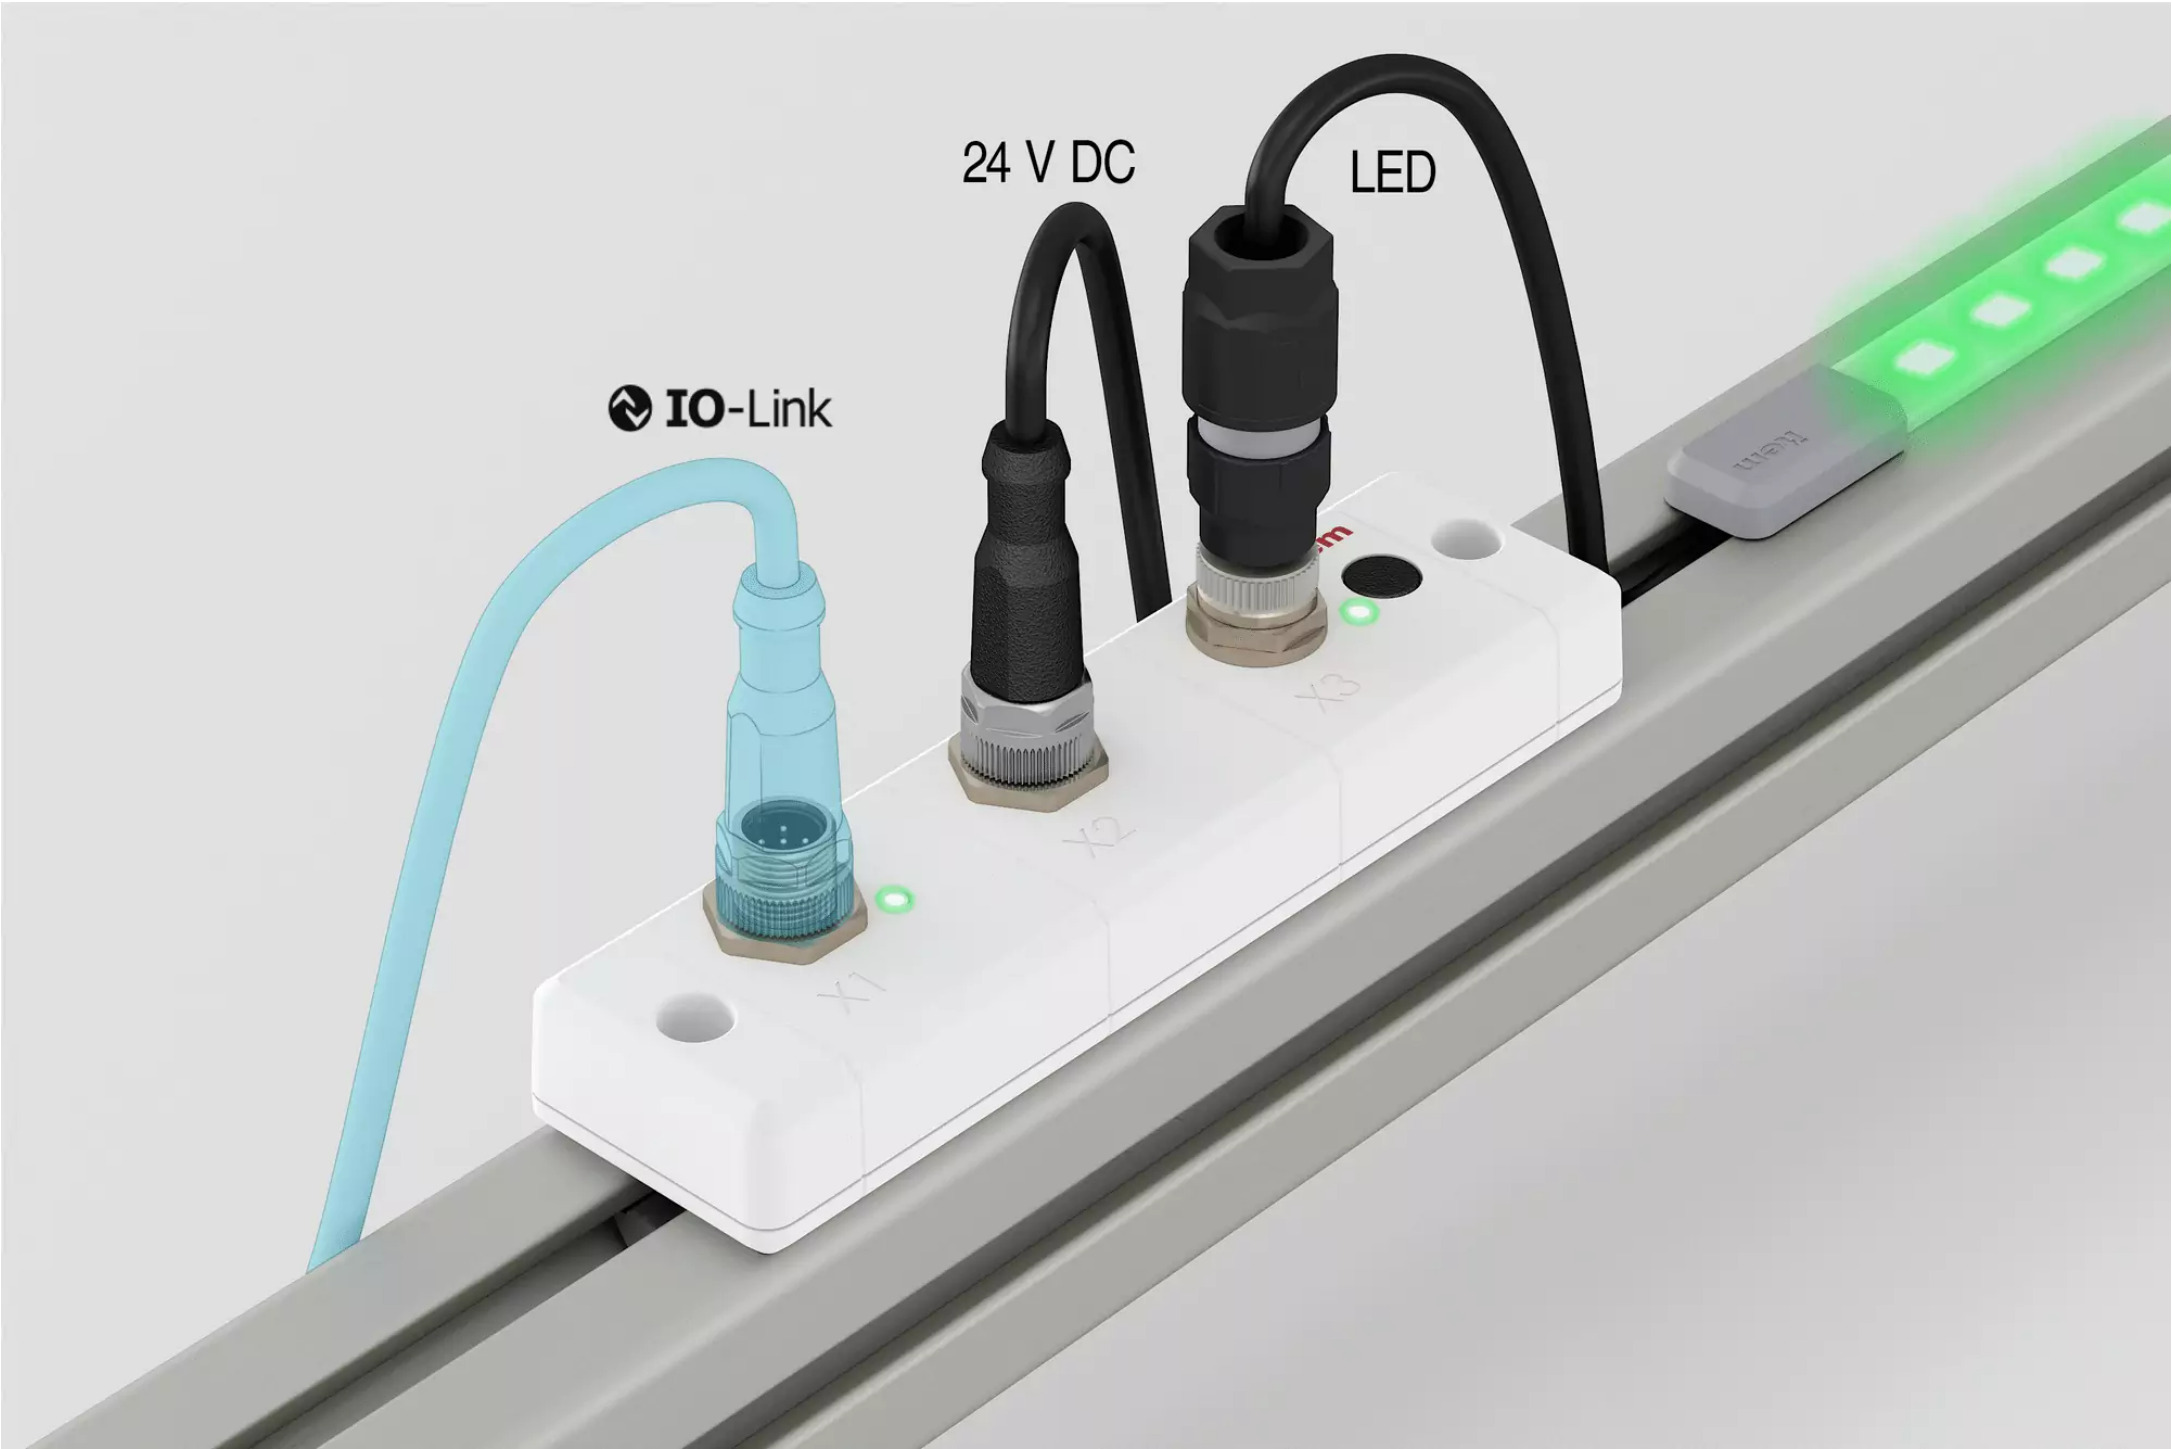 LED-Streifen mit IO-Link-Controller